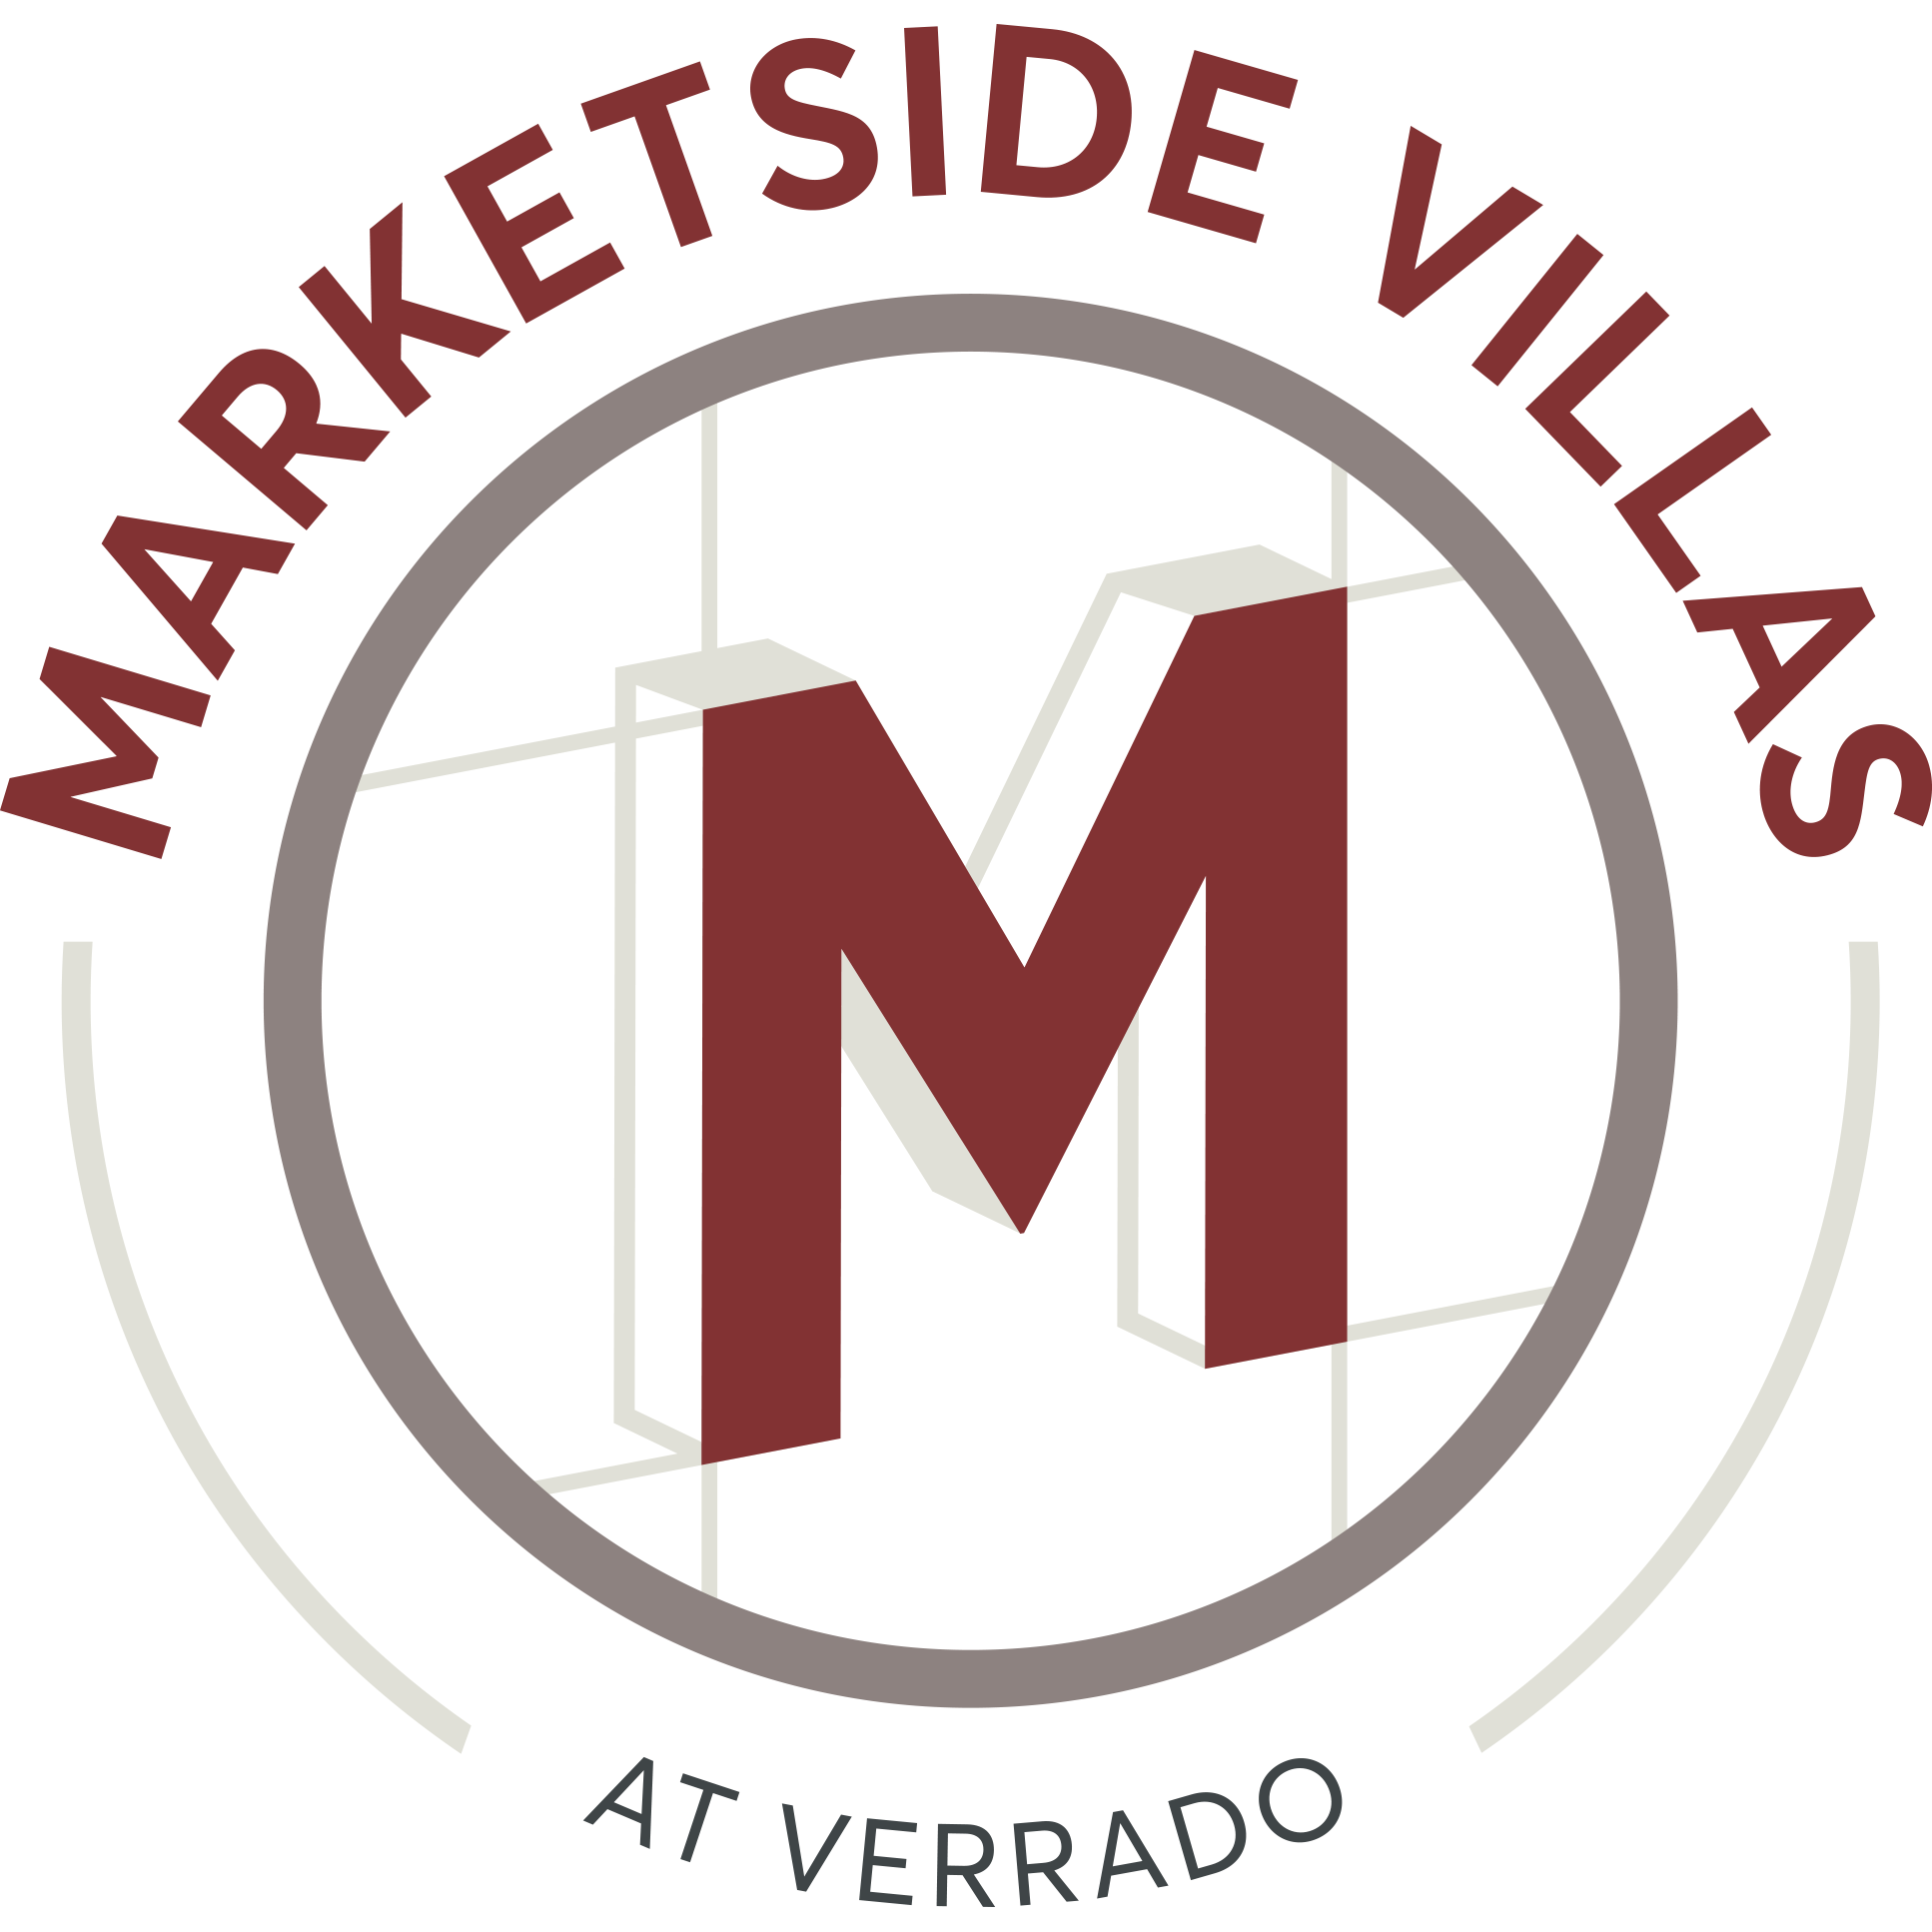 Marketside Villas at Verrado - Buckeye, AZ 85396 - (602)975-2785 | ShowMeLocal.com